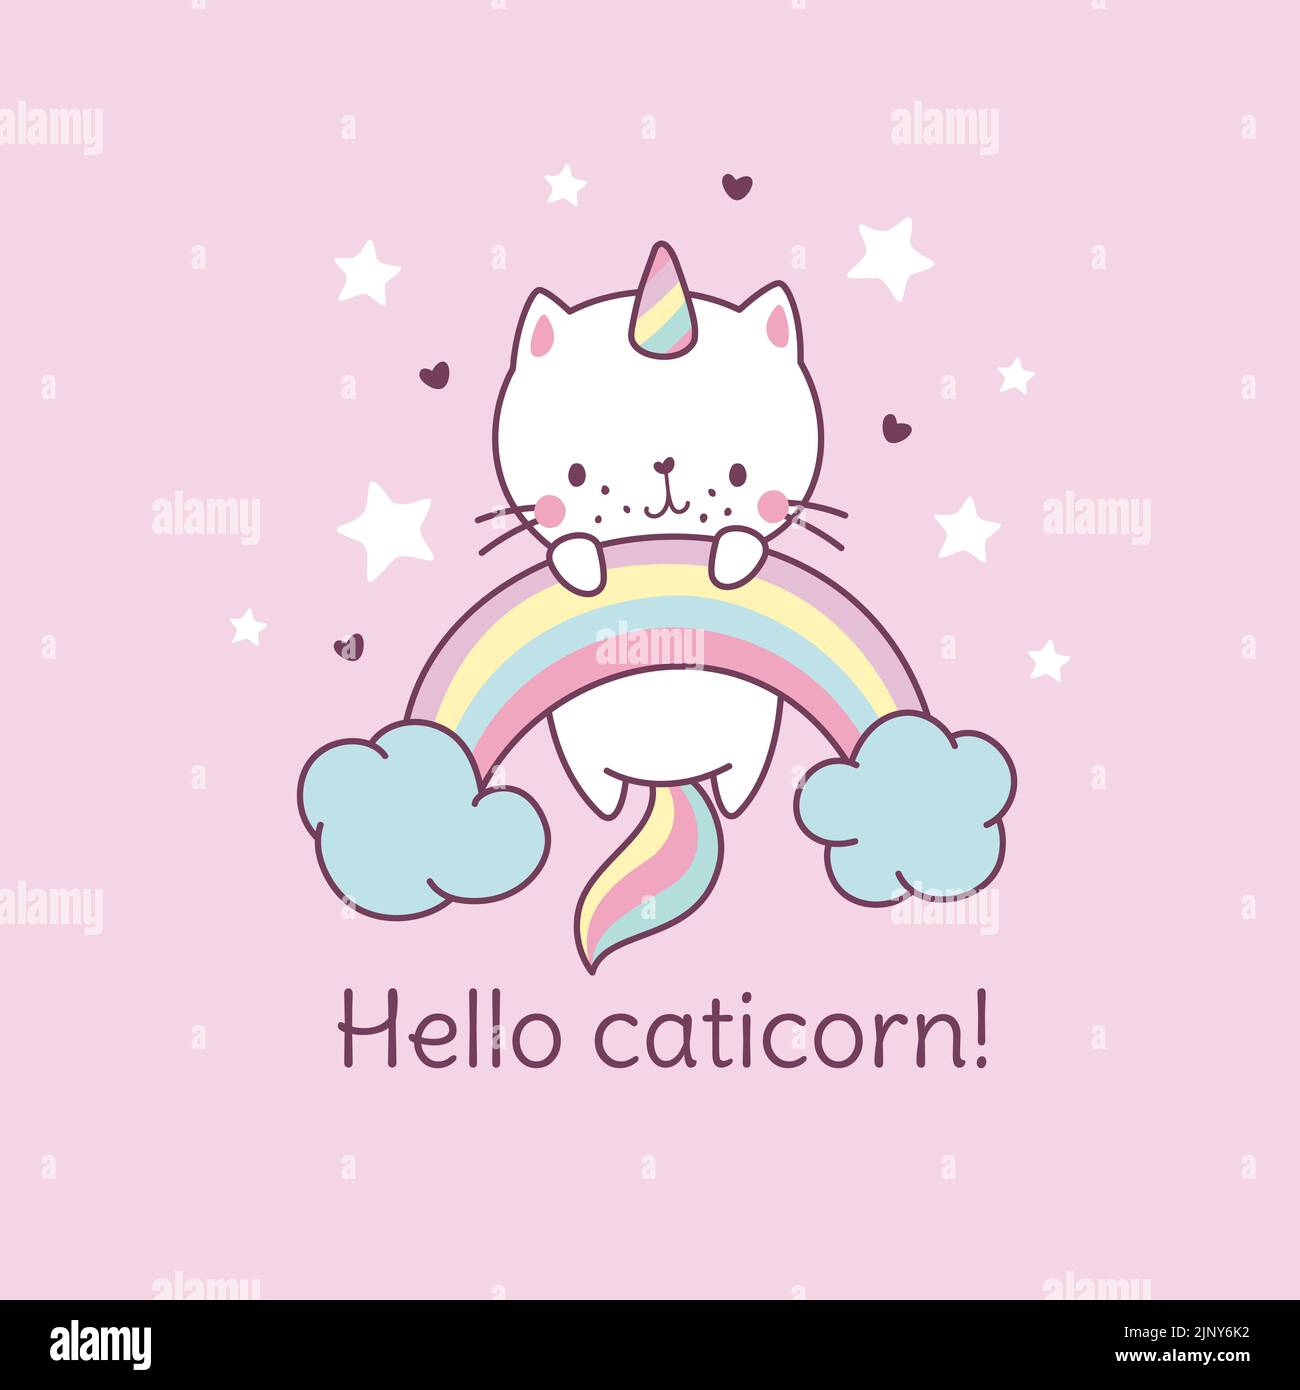 Póster de Caticorn. Gato unicornio sobre arco iris, gato de hadas camiseta estampado kawaii. Lindo personaje mágico divertido, dulce bebé animal nowaday vector de fondo Ilustración del Vector